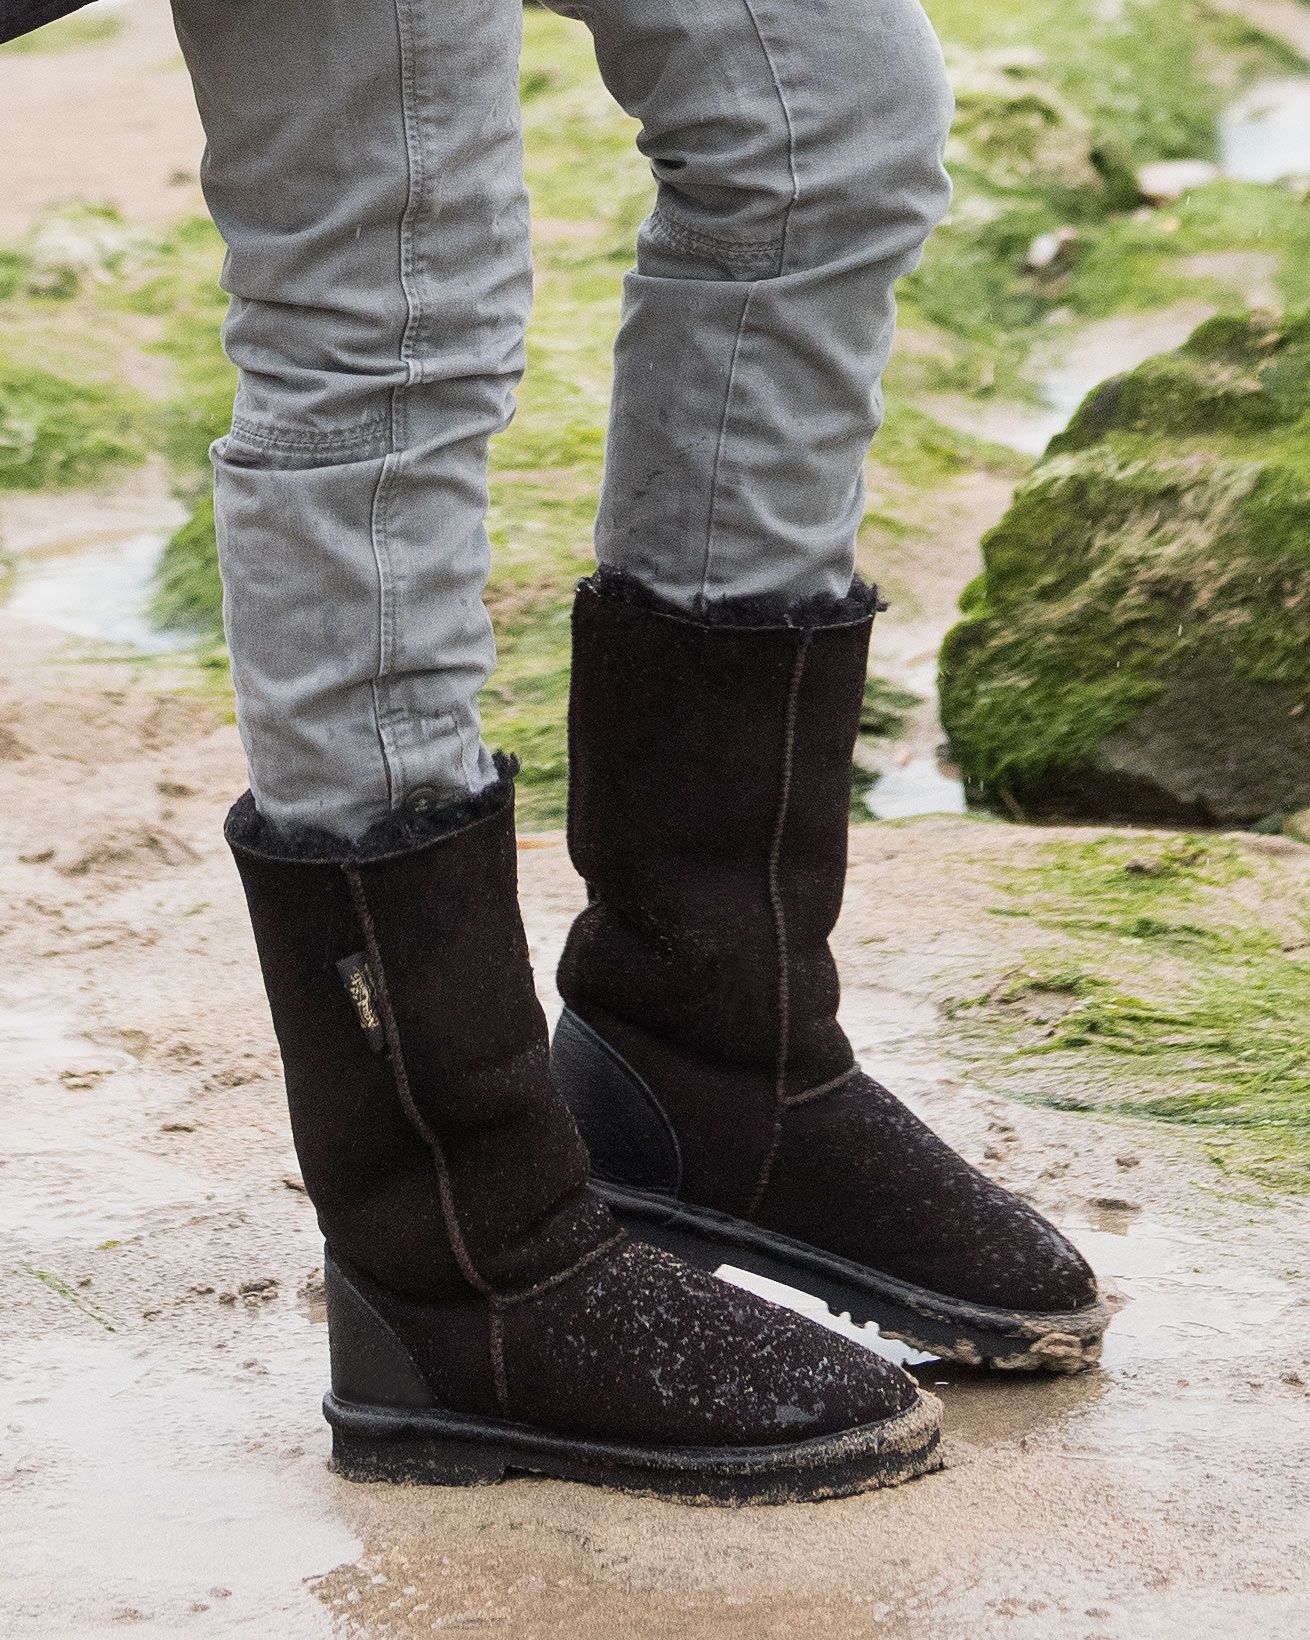 Aqualamb Sheepskin Boots Calf